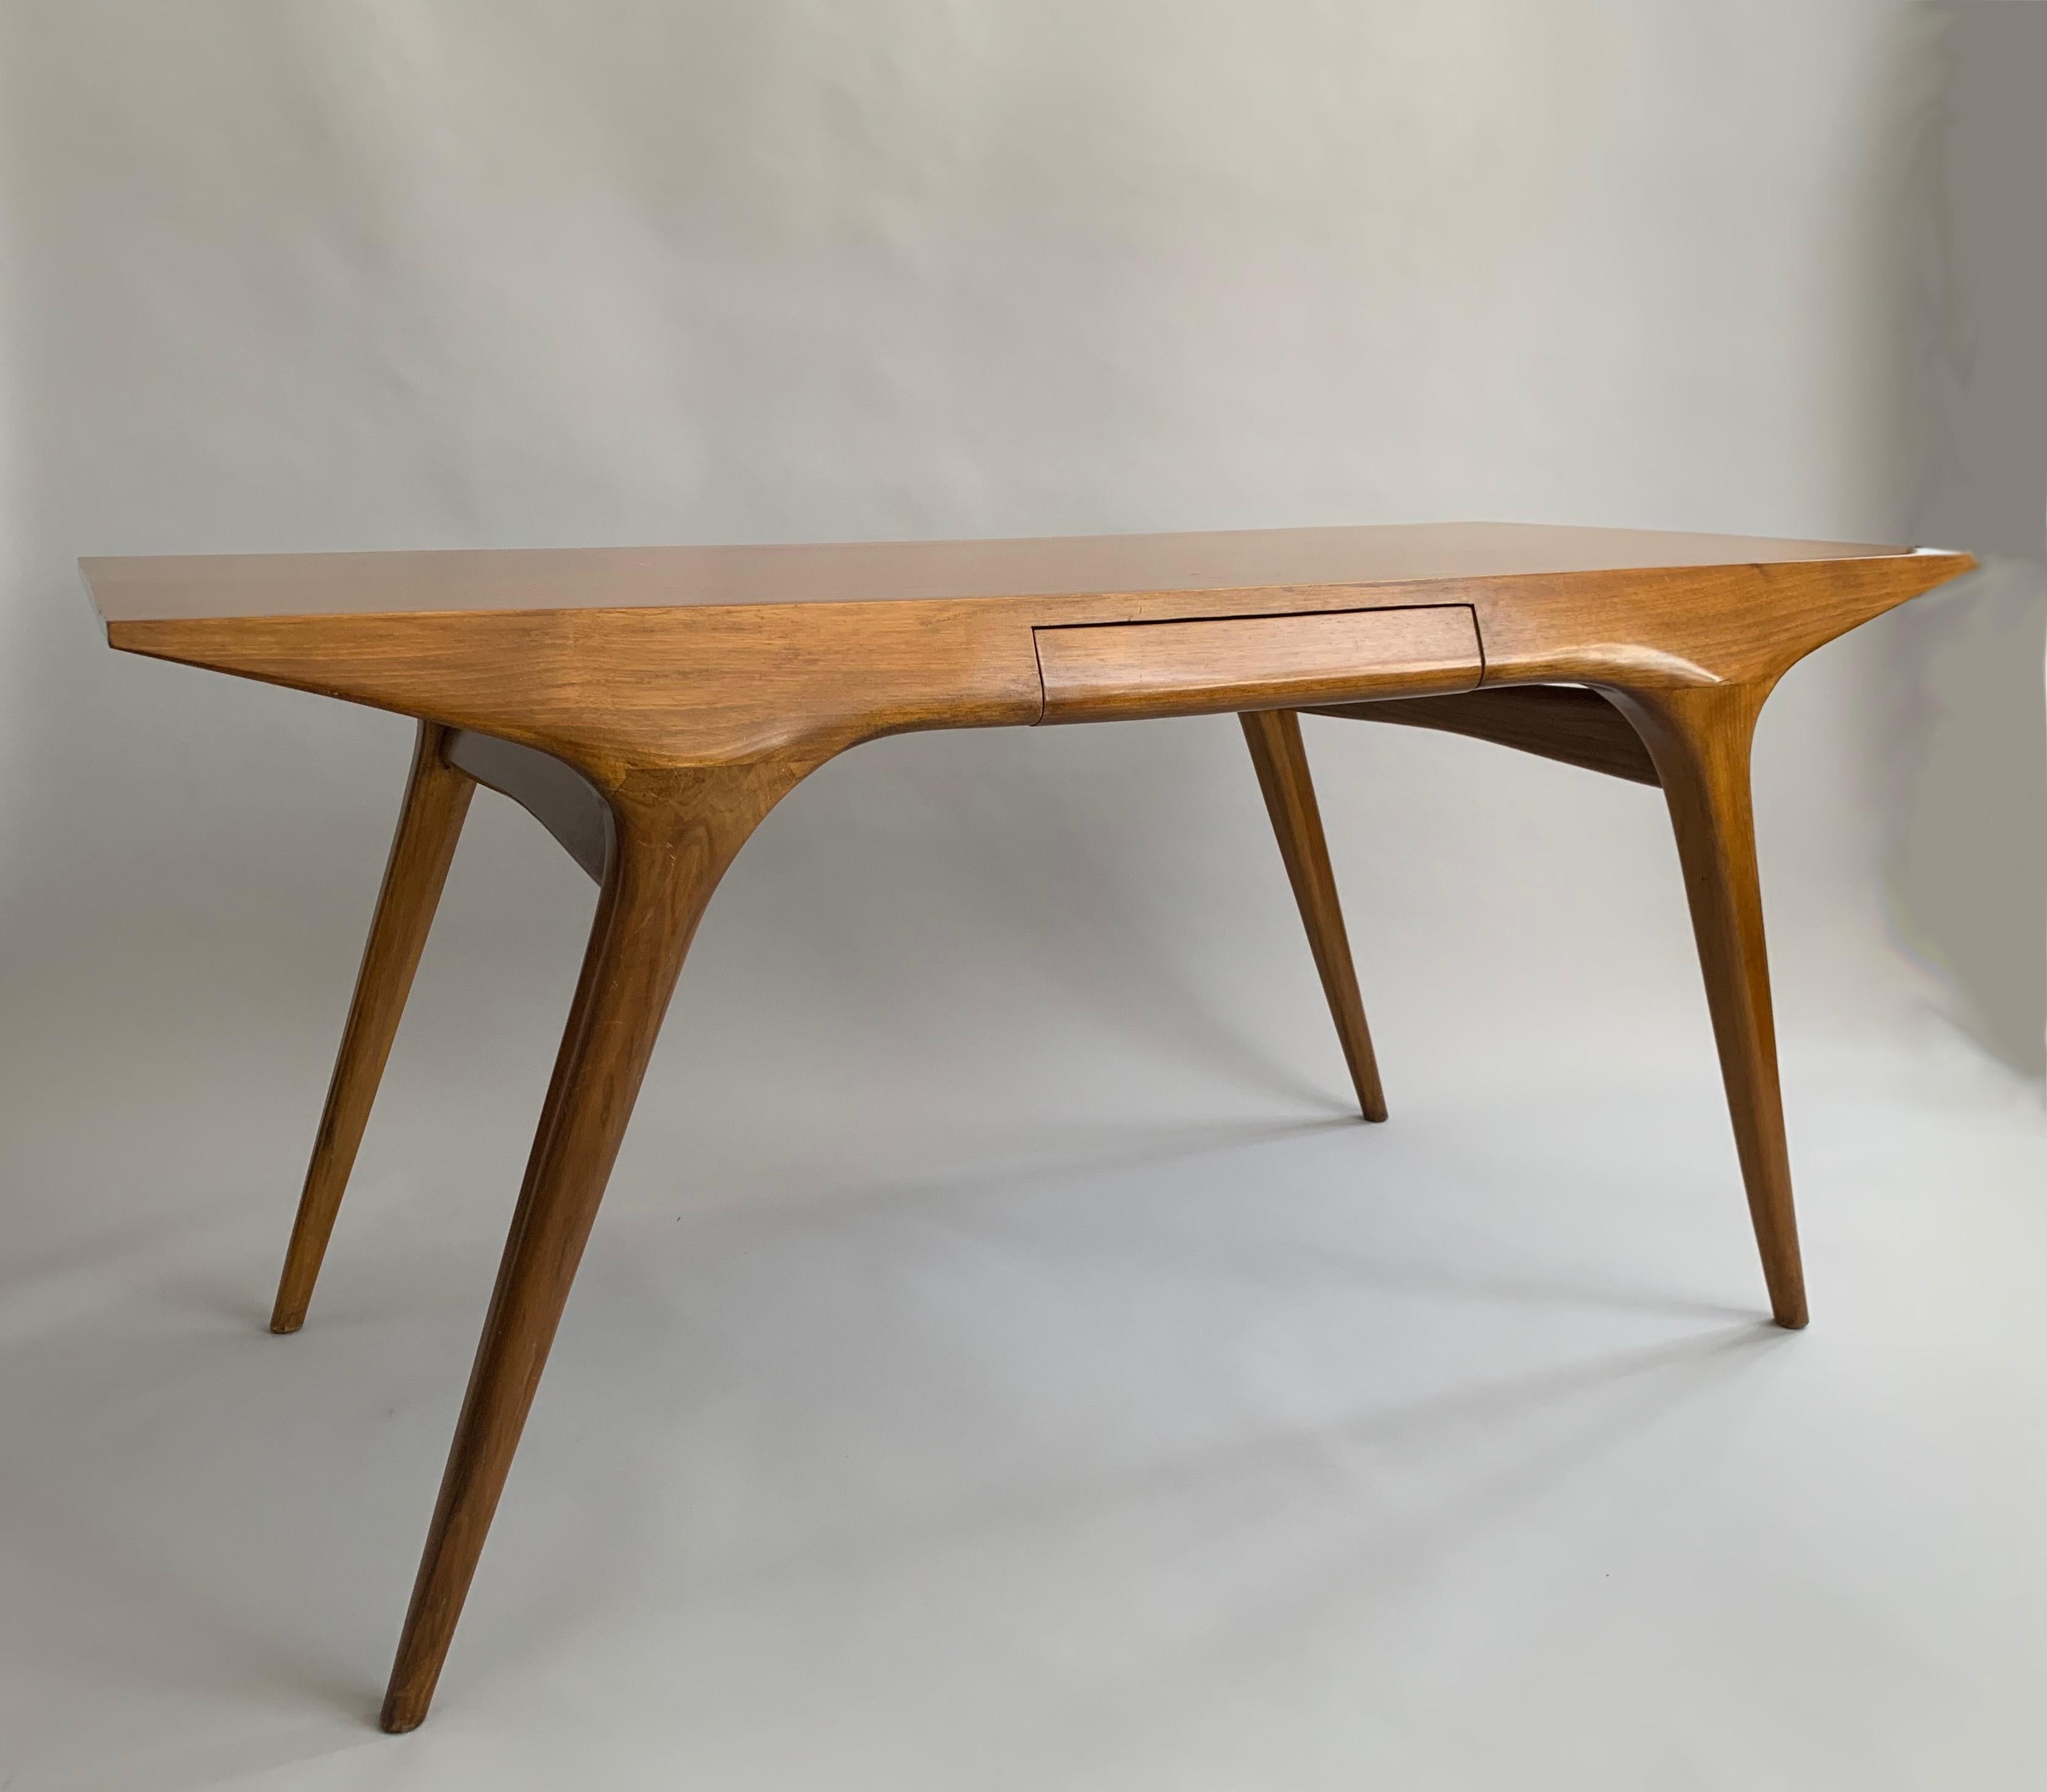 A rare desk

Manufactured by Cassina

Date made: 1950

Material: walnut

Size: H 30.5” x L 63” x D 28.5”

Origin: Italy.